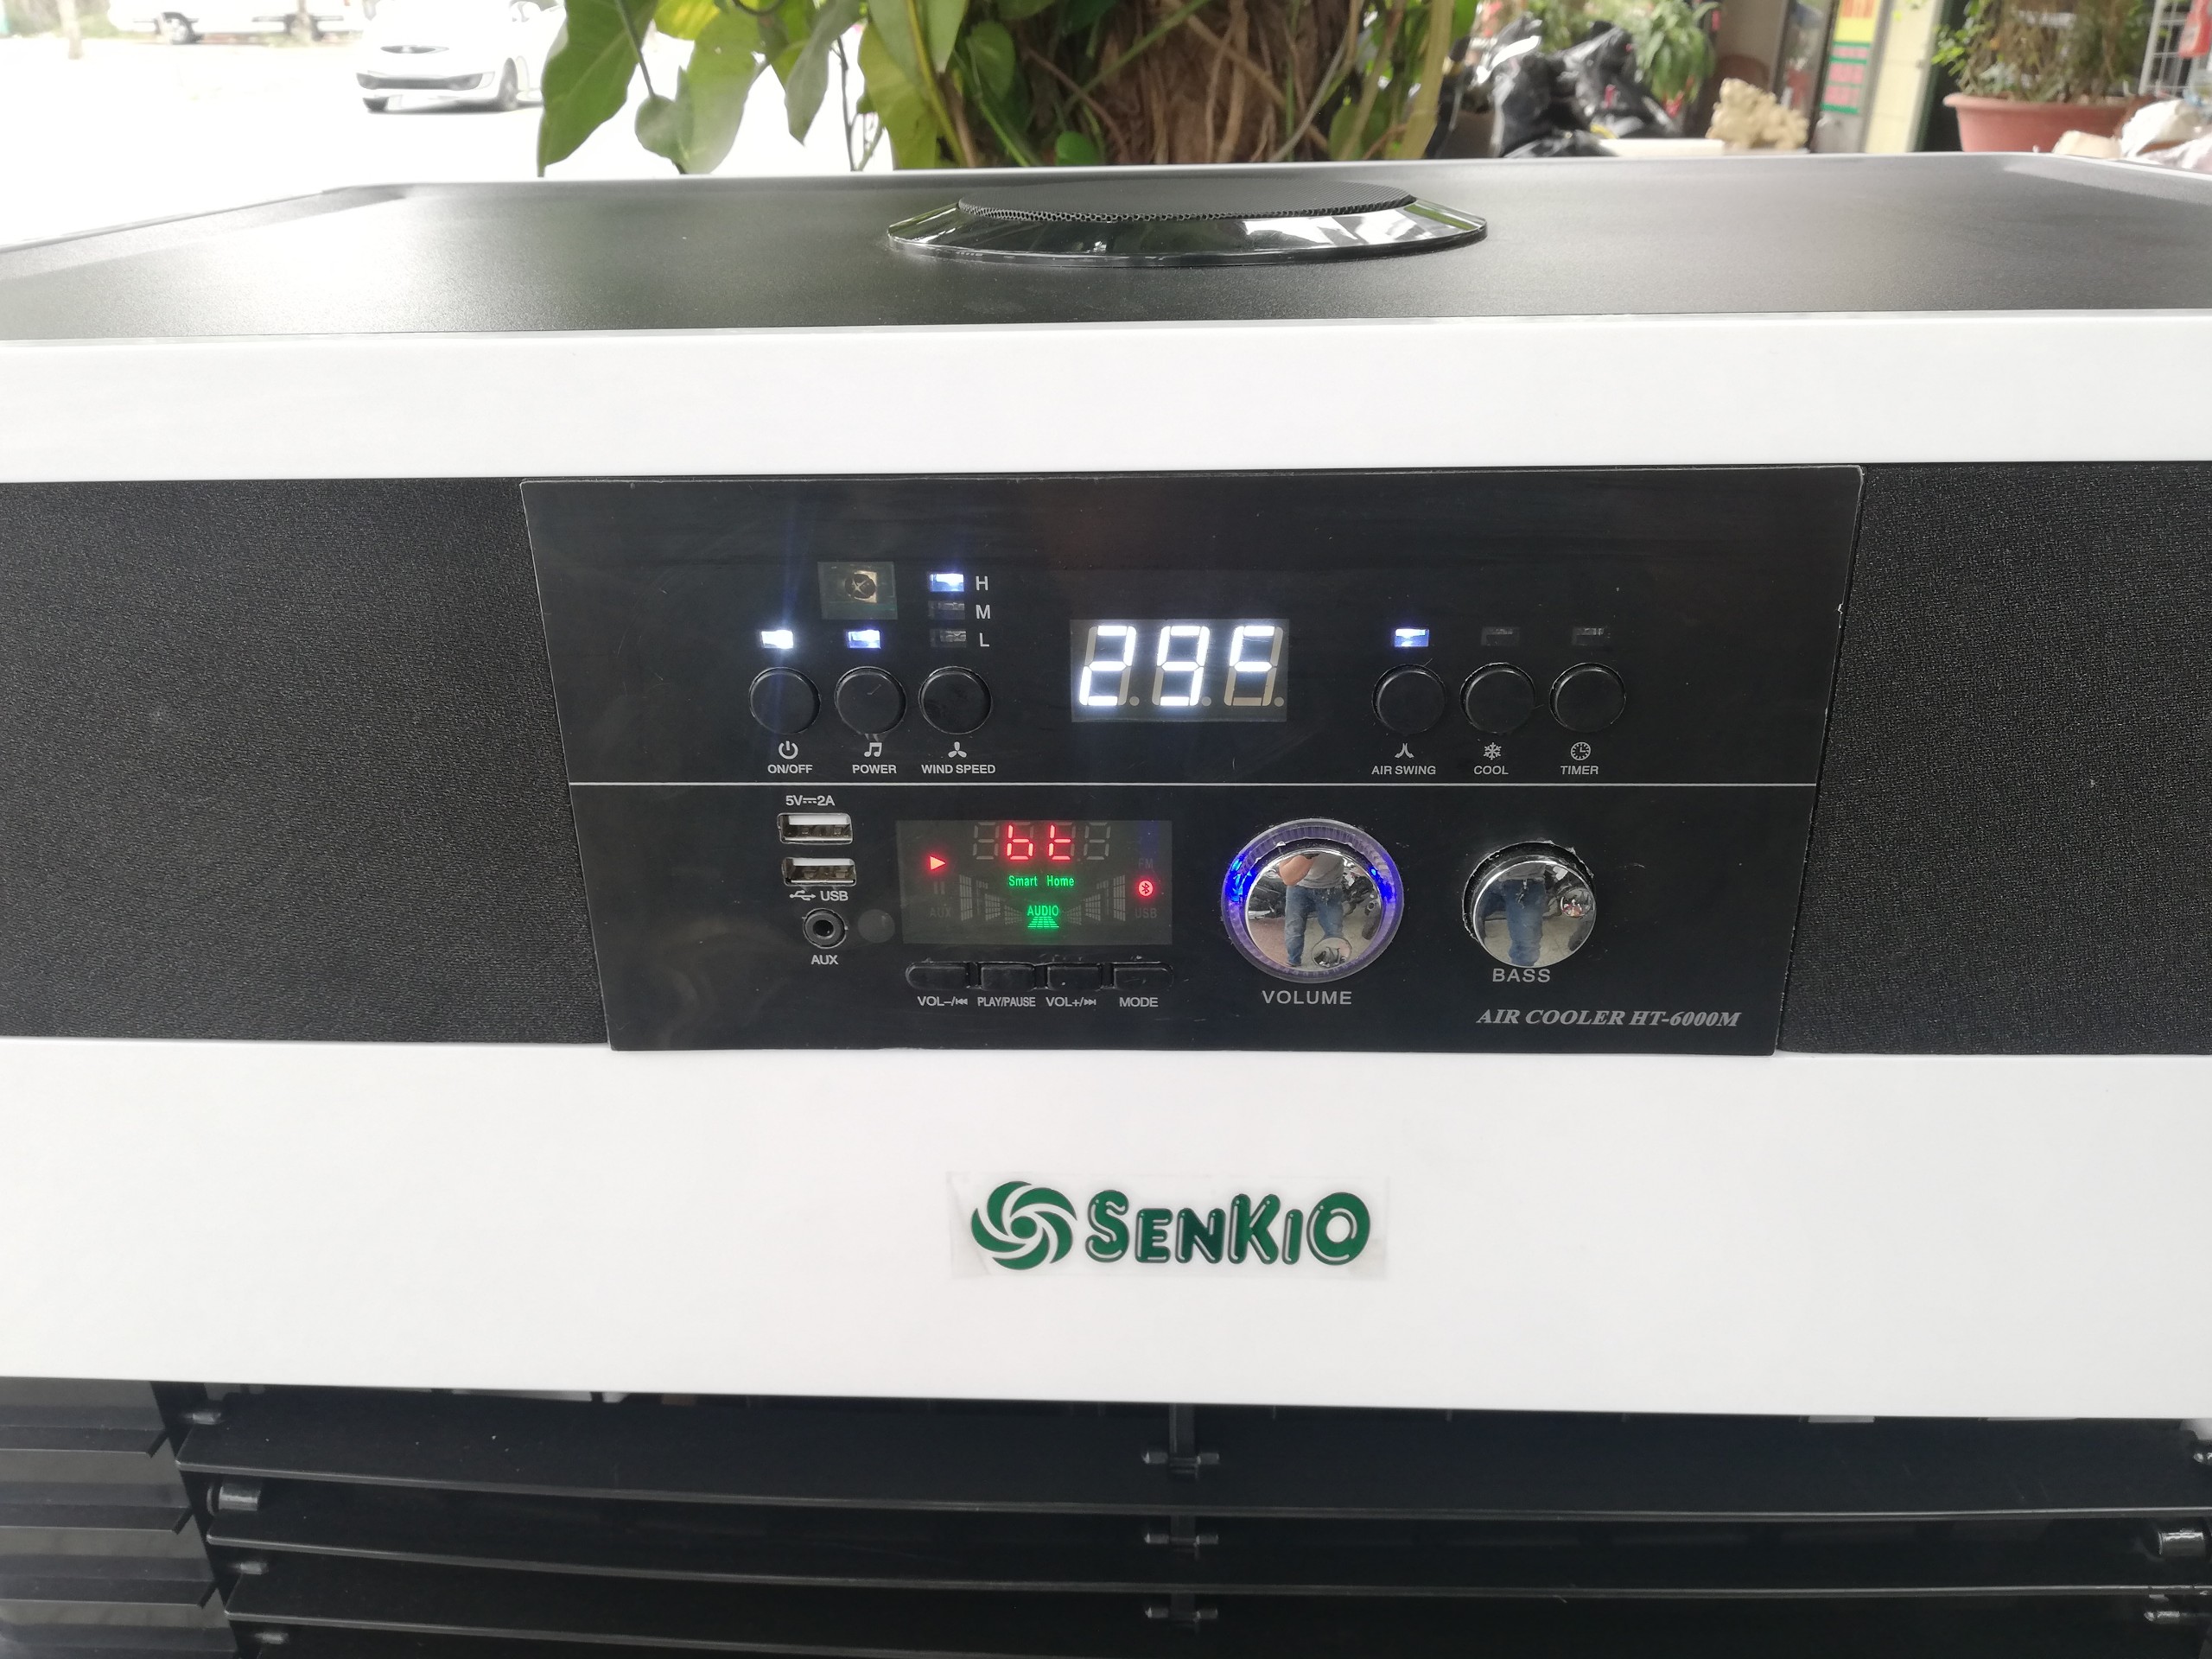 Quạt hơi nước làm mát không khí (có chức năng nghe nhạc Bluetooth) Senkio AirCooler HT-6000M